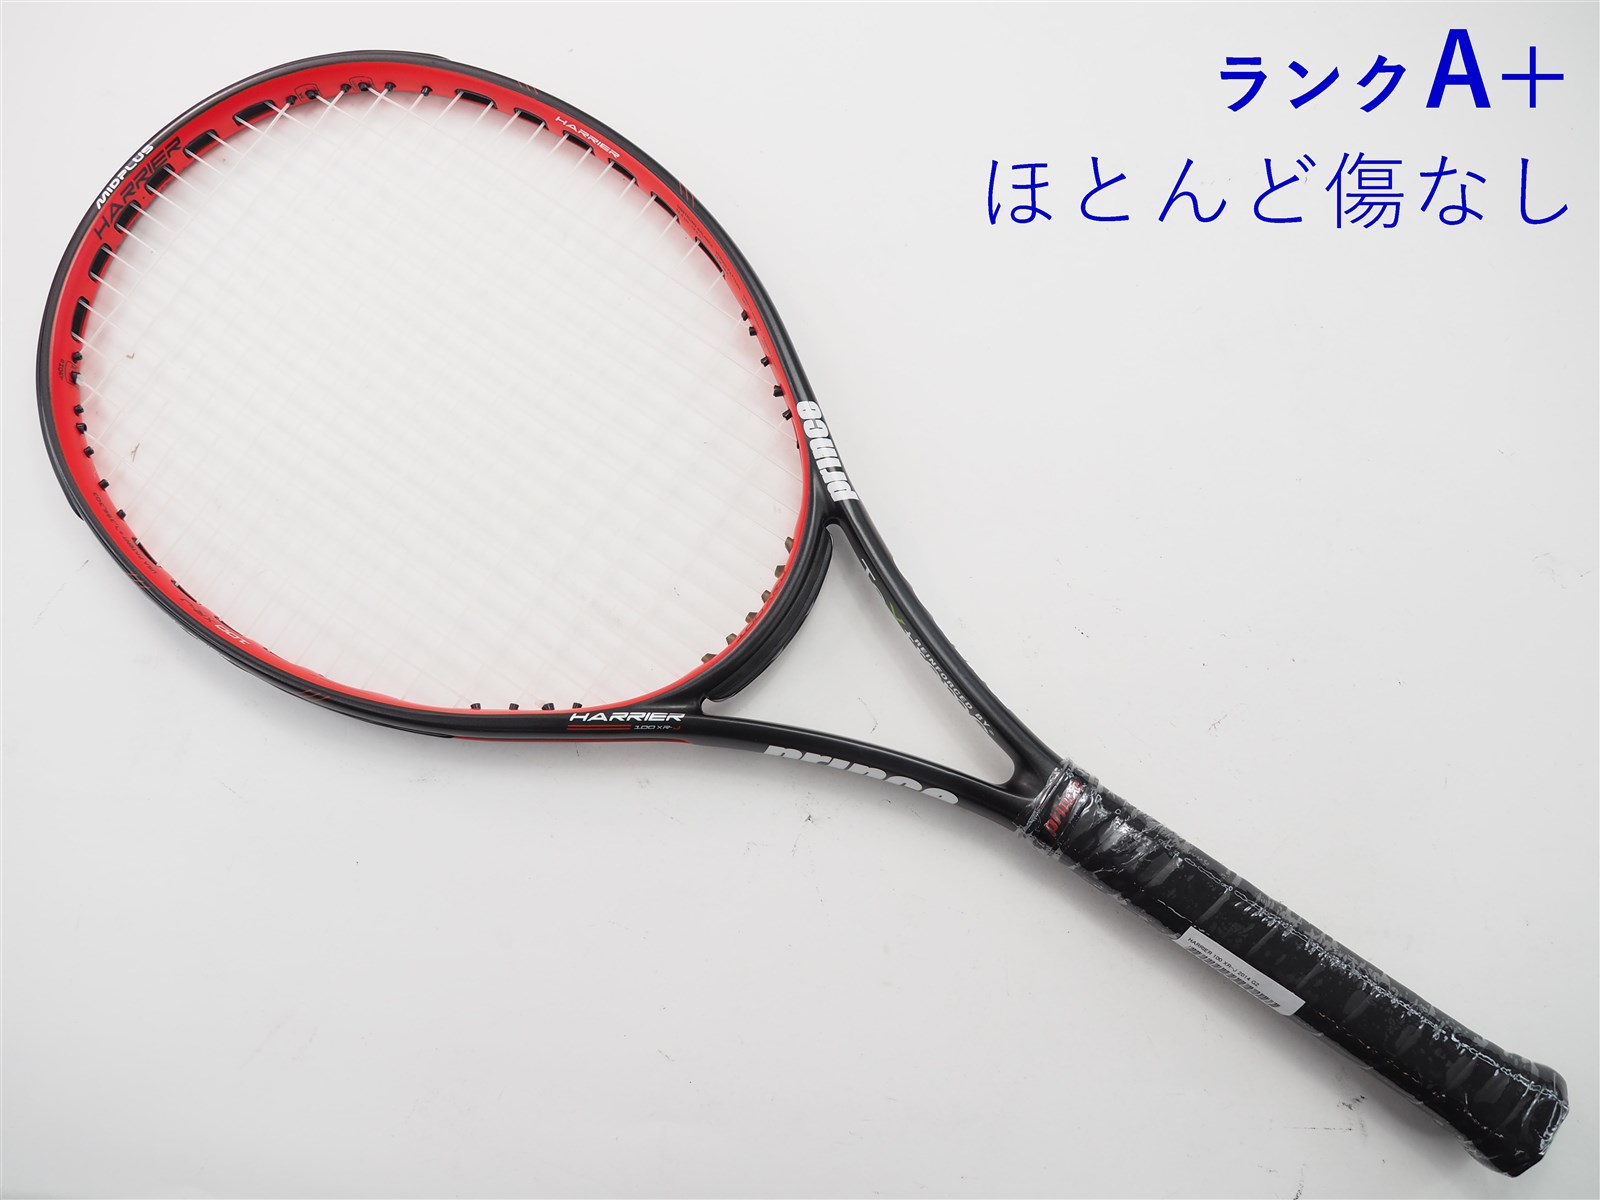 プリンス 硬式テニスラケット HARRIER 100XR-J ハリアー 100エックスアールジェイ 7T40G Prince